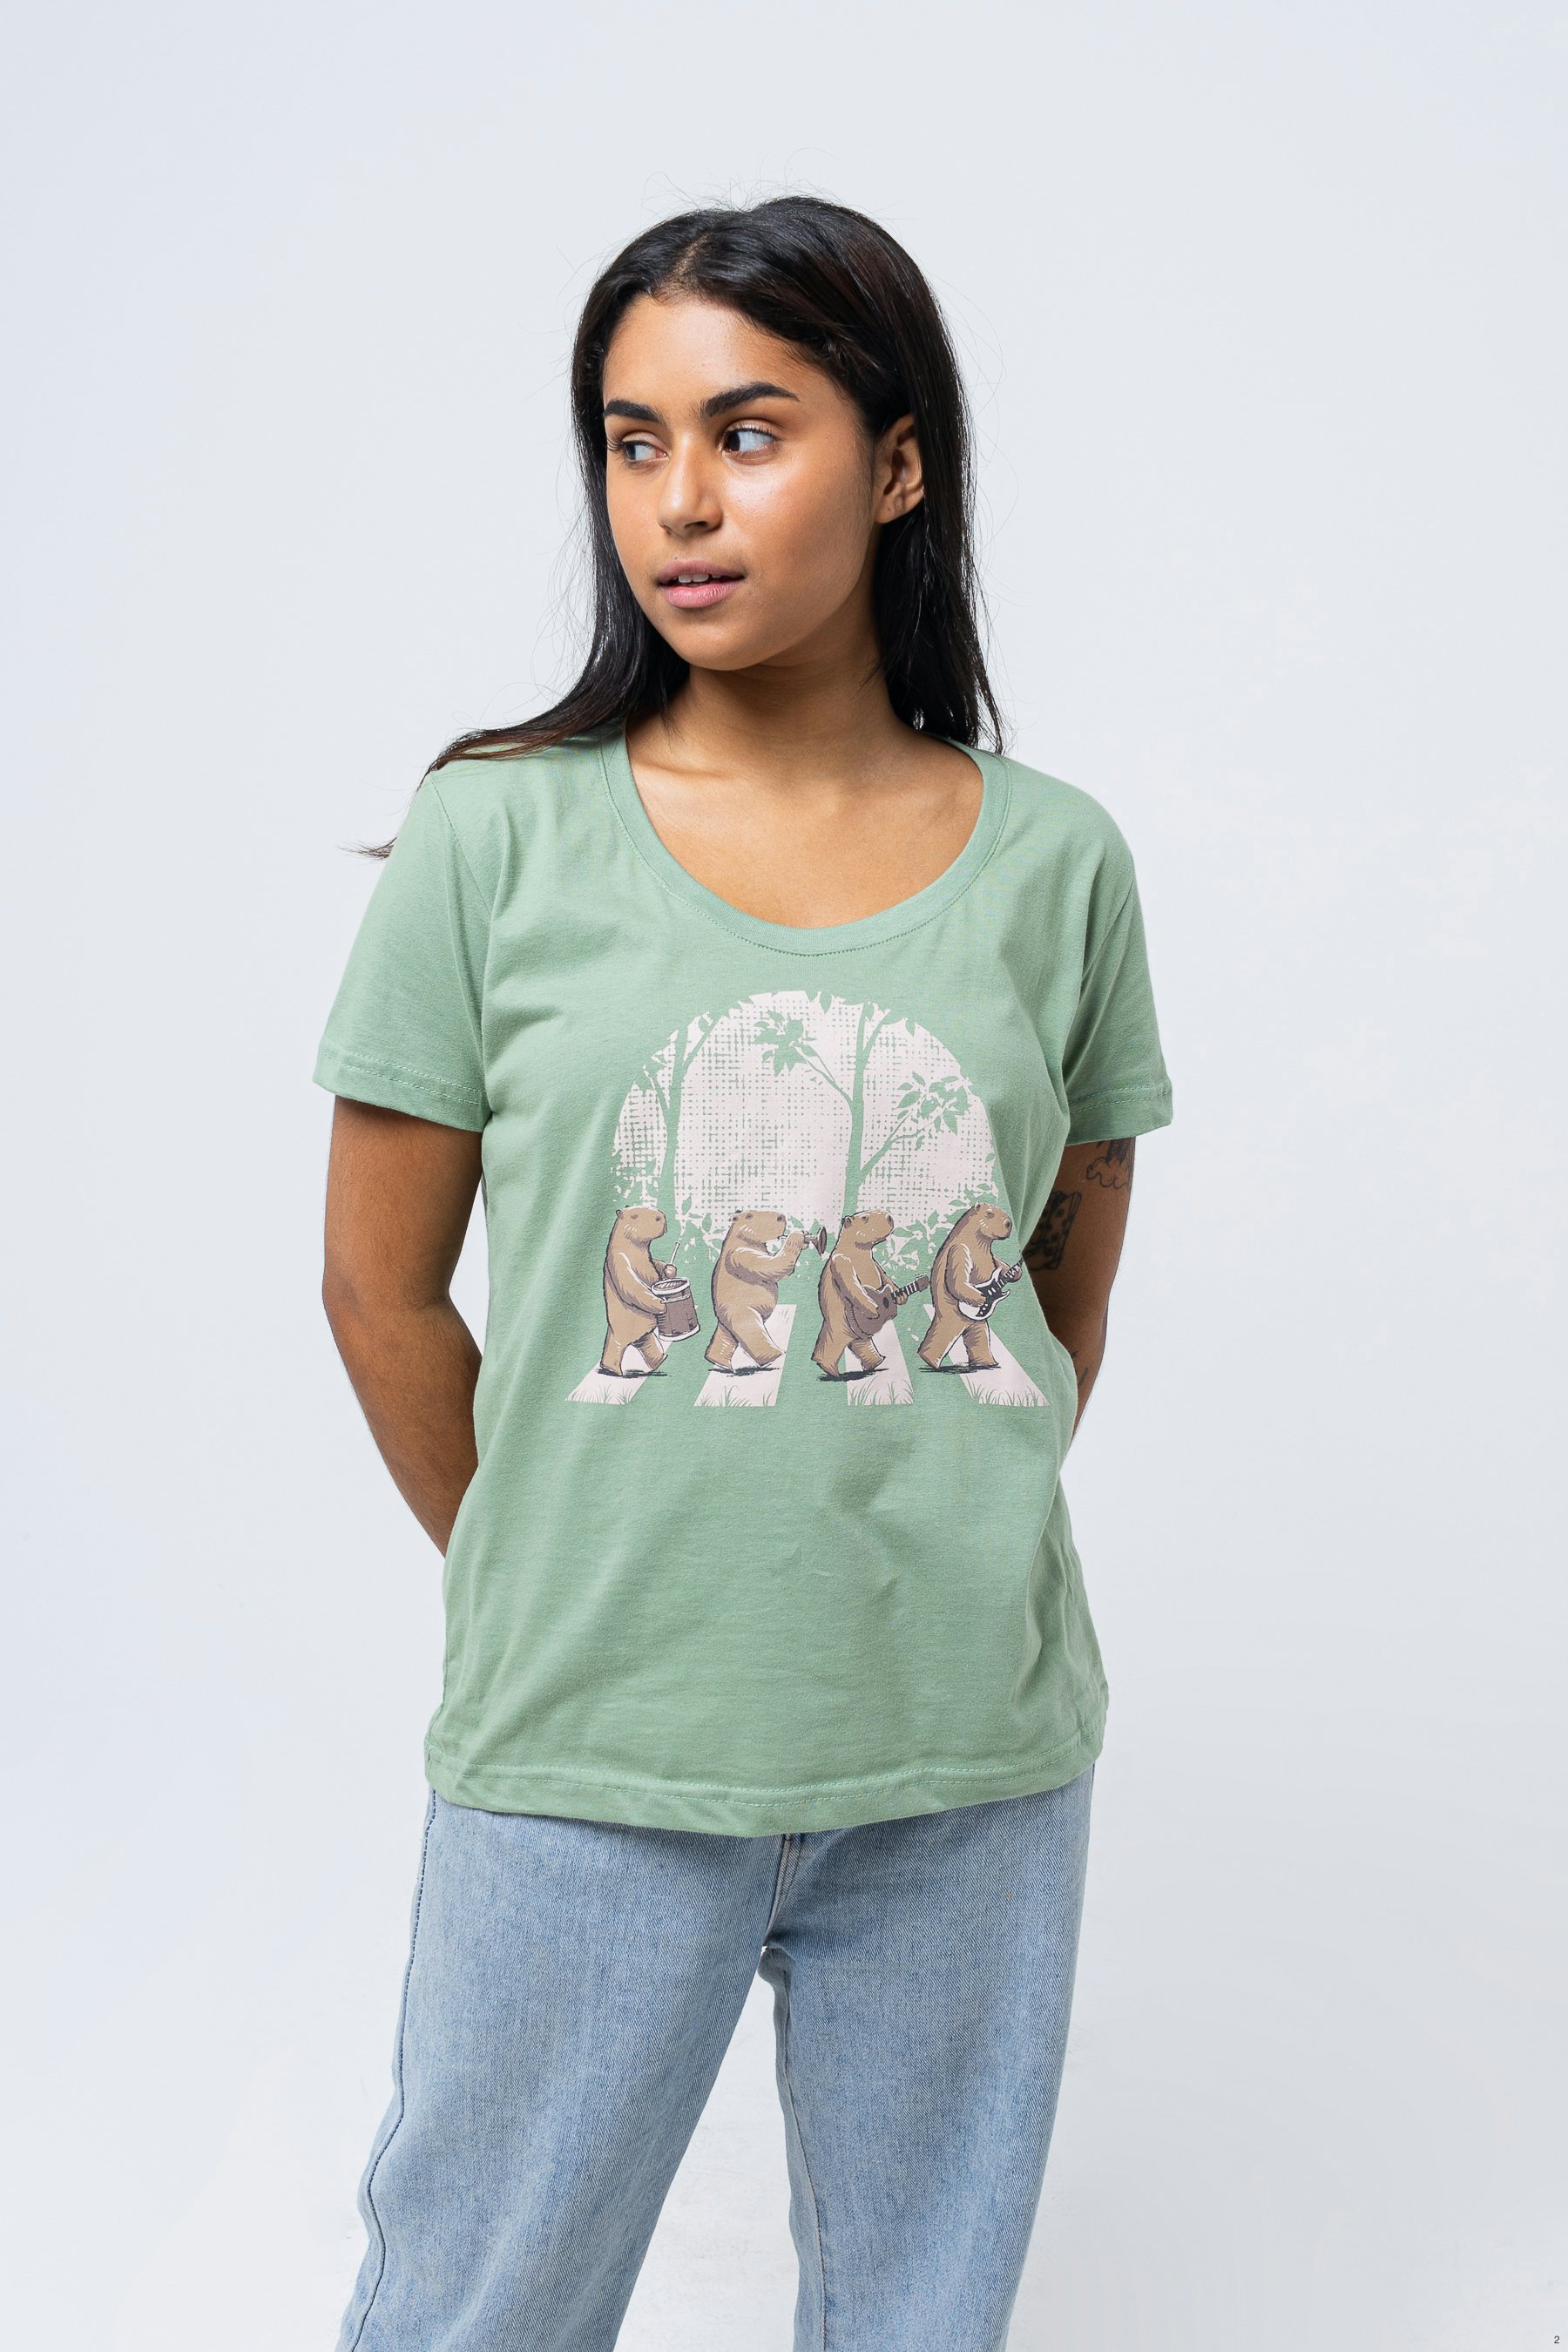 Camiseta Capybara's Road Camisetas